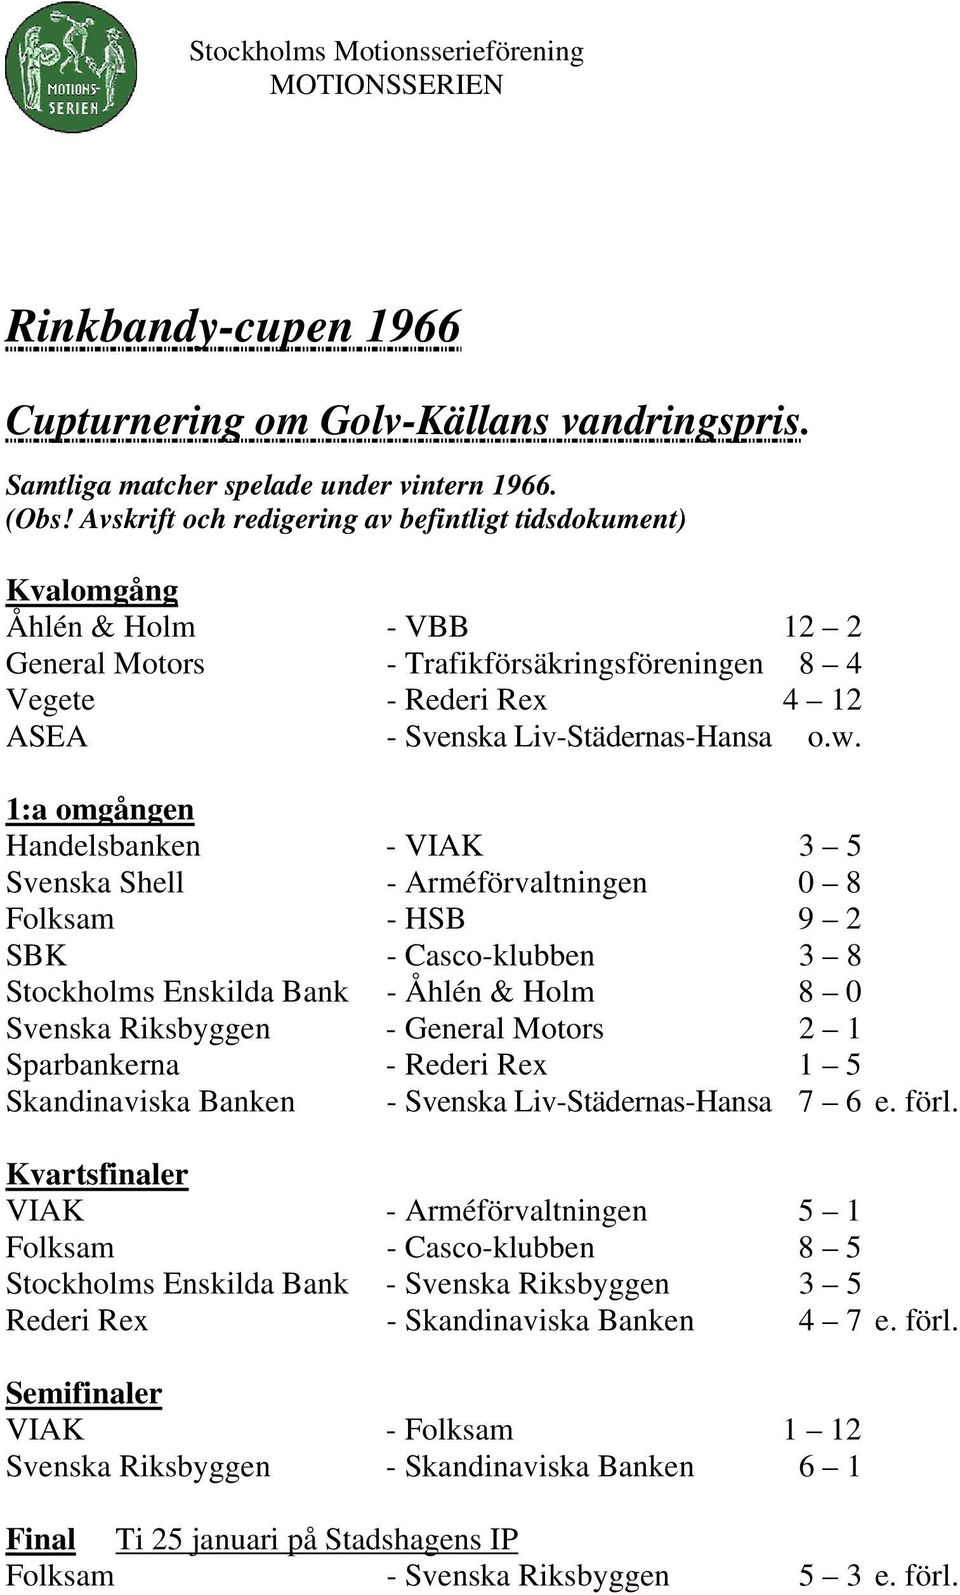 1:a omgången Handelsbanken - VIAK 3 5 Svenska Shell - Arméförvaltningen 0 8 Folksam - HSB 9 2 SBK - Casco-klubben 3 8 Stockholms Enskilda Bank - Åhlén & Holm 8 0 Svenska Riksbyggen - General Motors 2